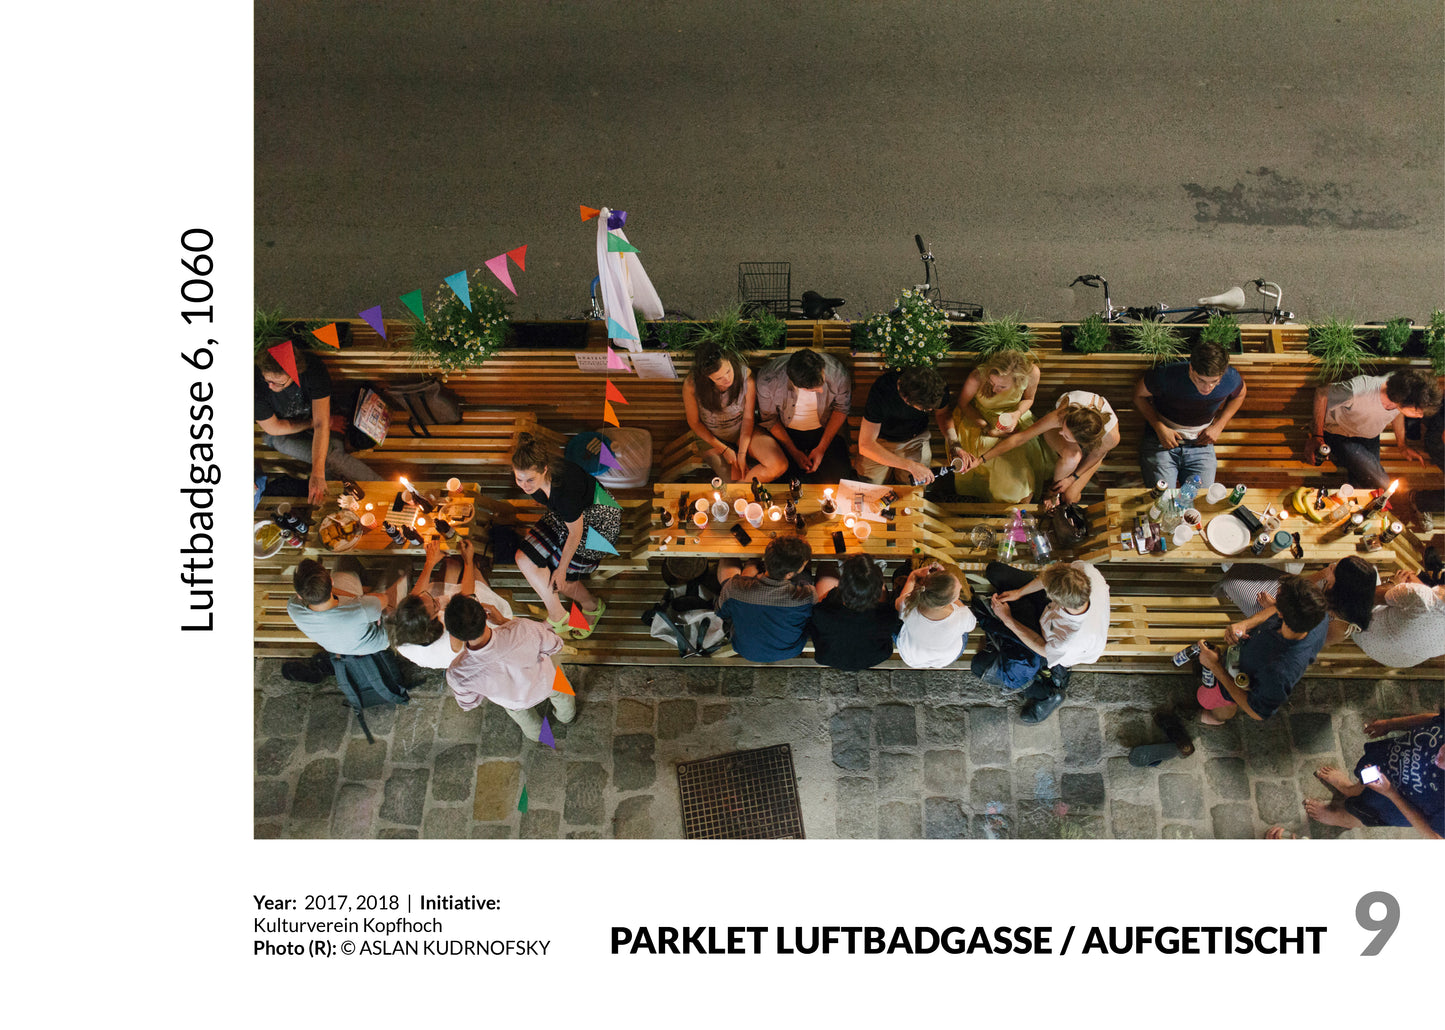 Parklets // Street Furniture Vienna